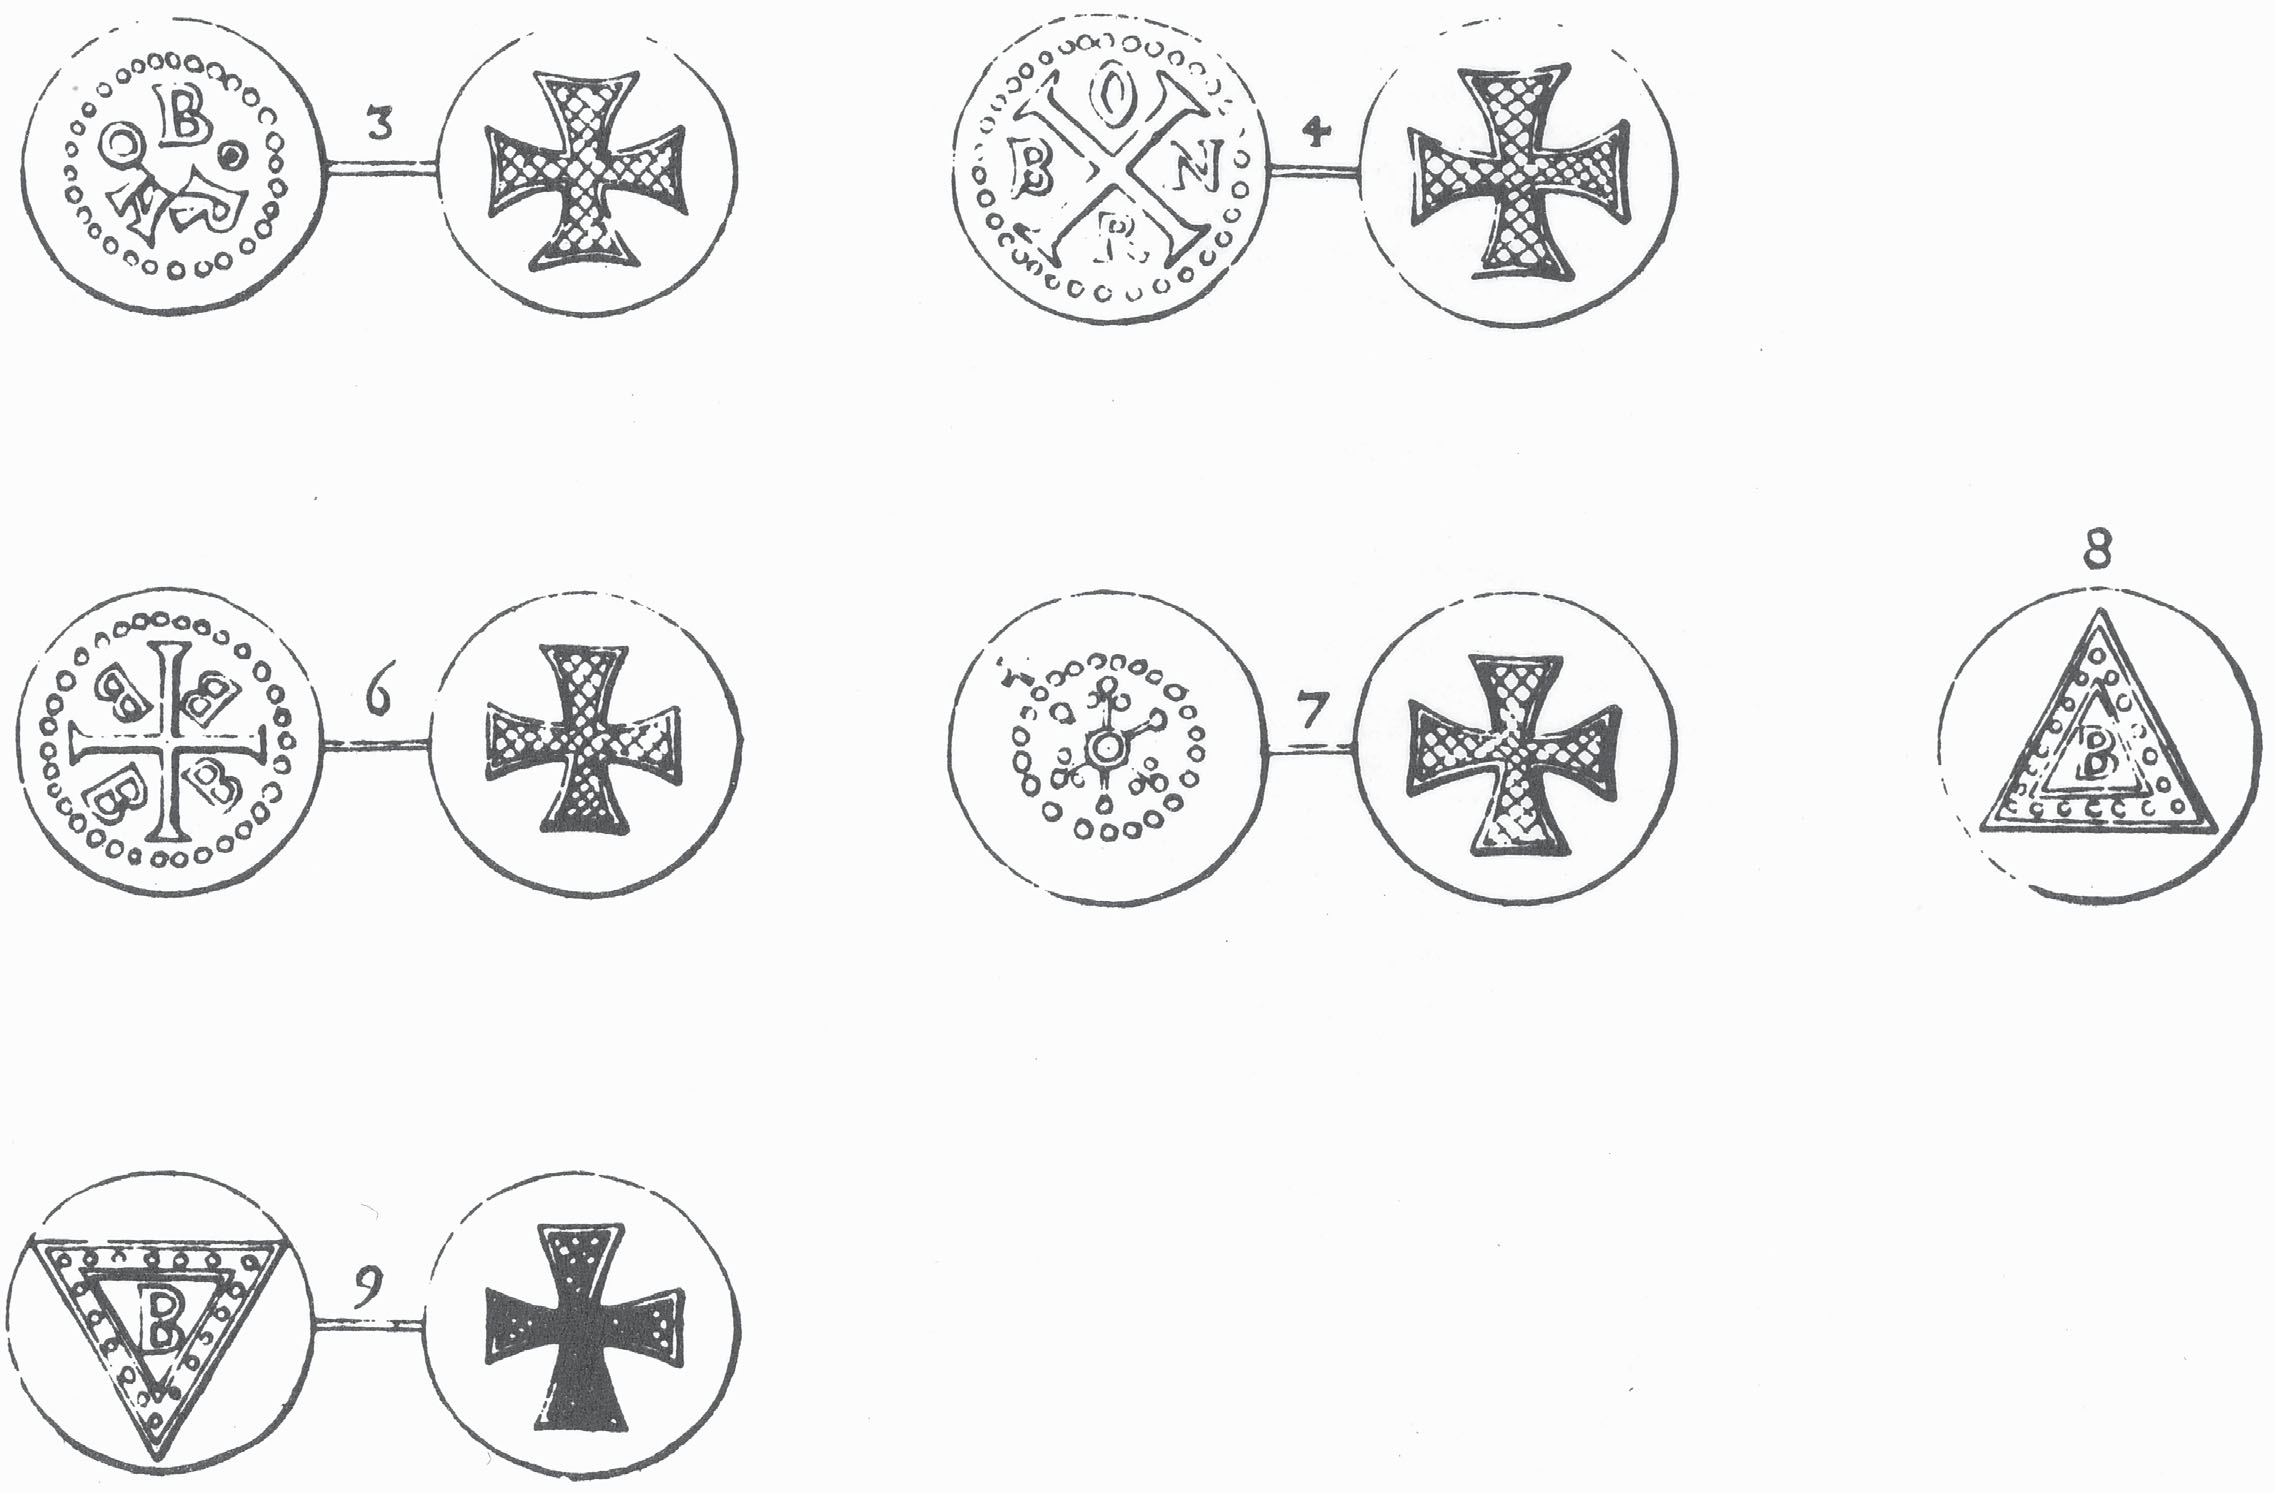 XI qui in Suecia reperti sunt. Catalogue of Coins from the 9th-11th Centuries found in Sweden. Verzeischnis der in Schweden gefunden Münzen des 9.-11. Jahrhunderts. 3. Skåne 4. Maglarp-Ystad. Red. B.